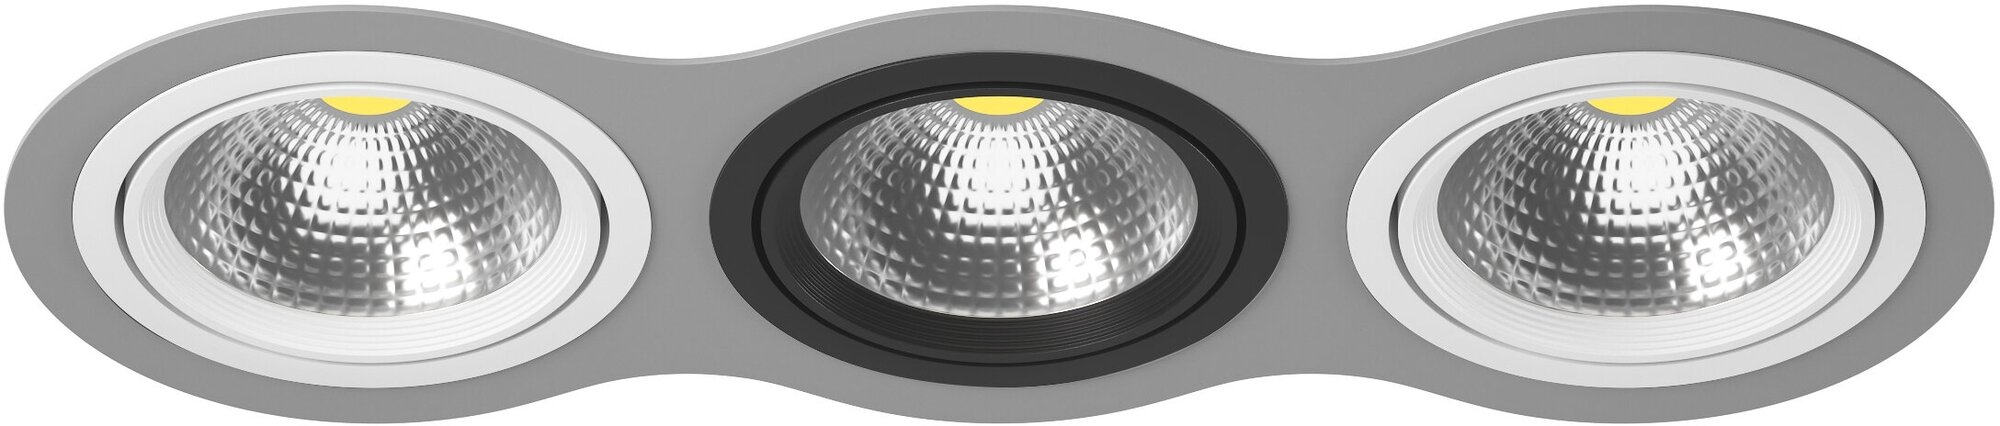 Точечный светильник встроенный серый Lightstar Intero 111 i939060706